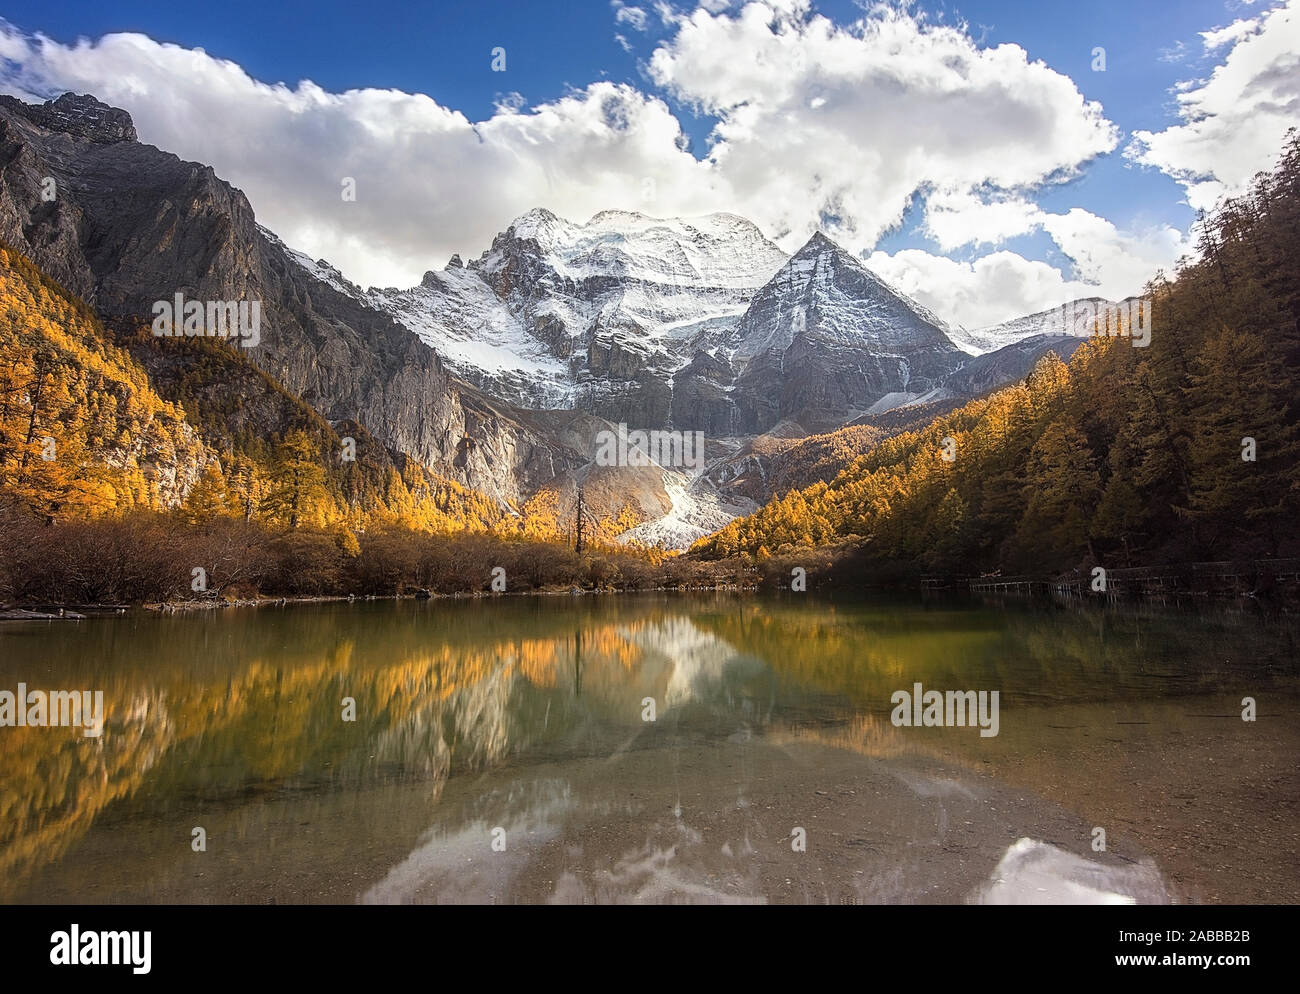 Berg Reflexionen in einem See, Naturschutzgebiet, daocheng Yading, Sichuan, China Stockfoto